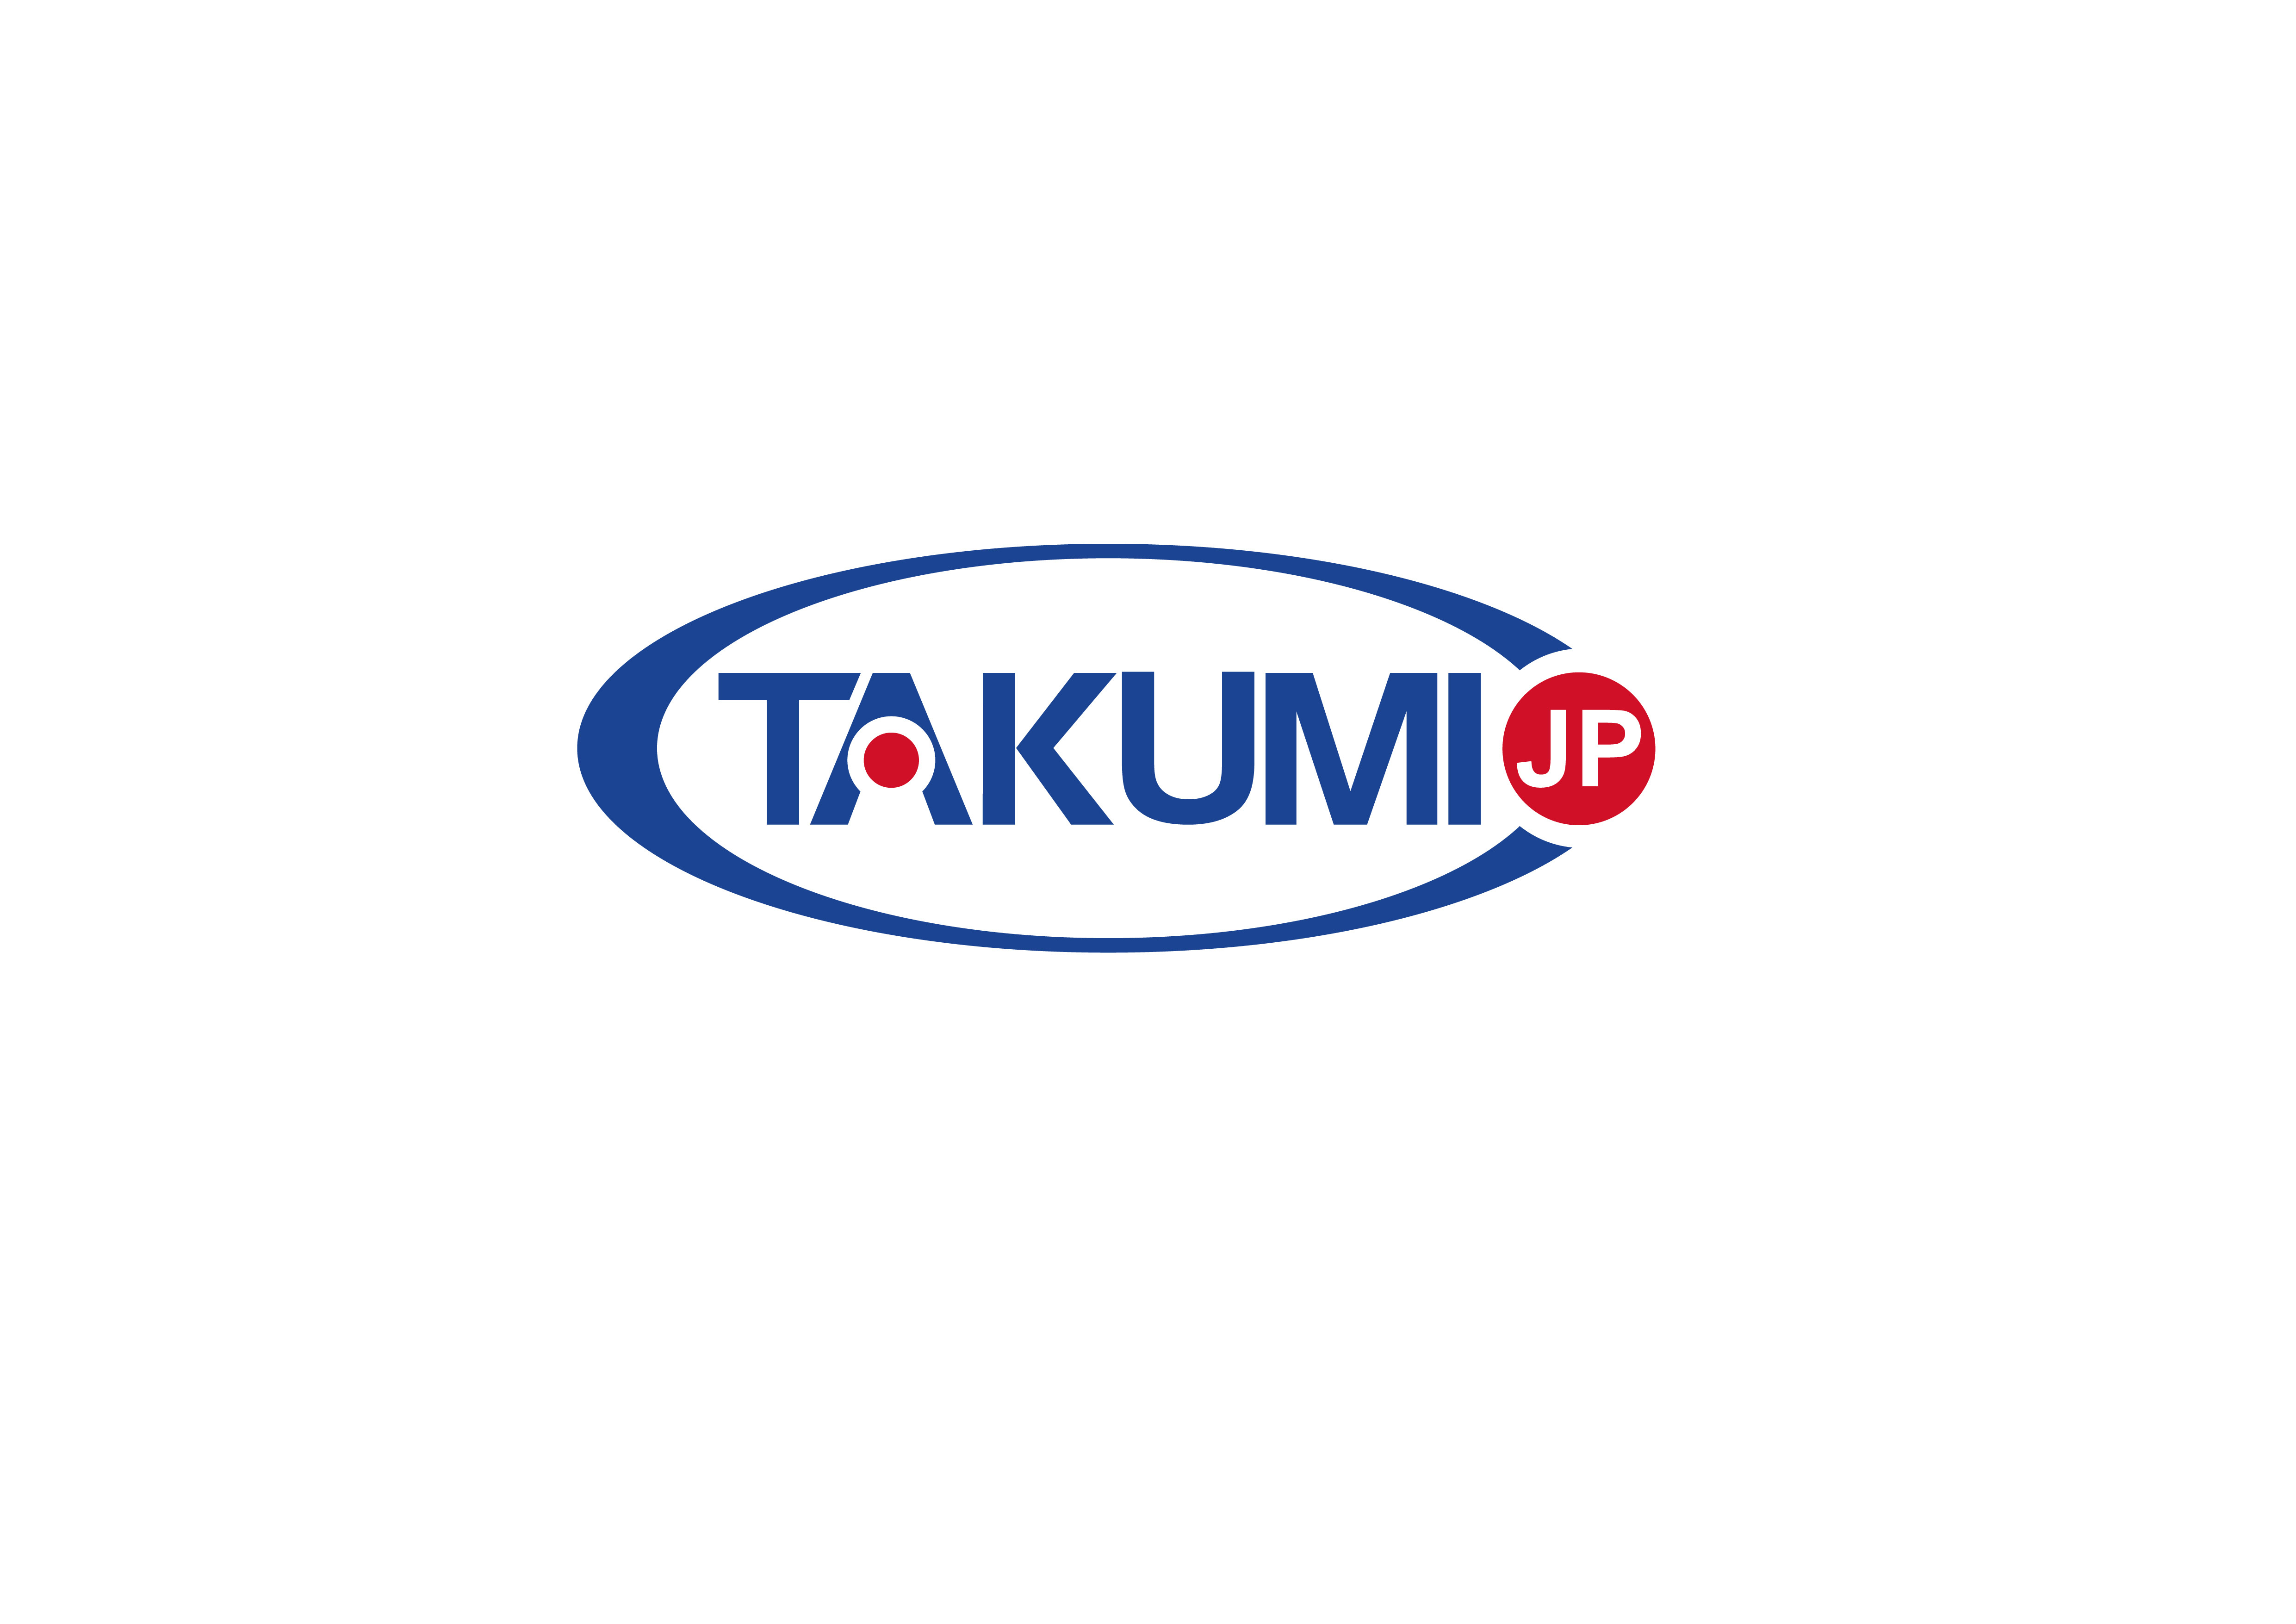 kasus perusahaan terbaru tentang Takumi sekarang sedang mencari distributor eksklusif global.